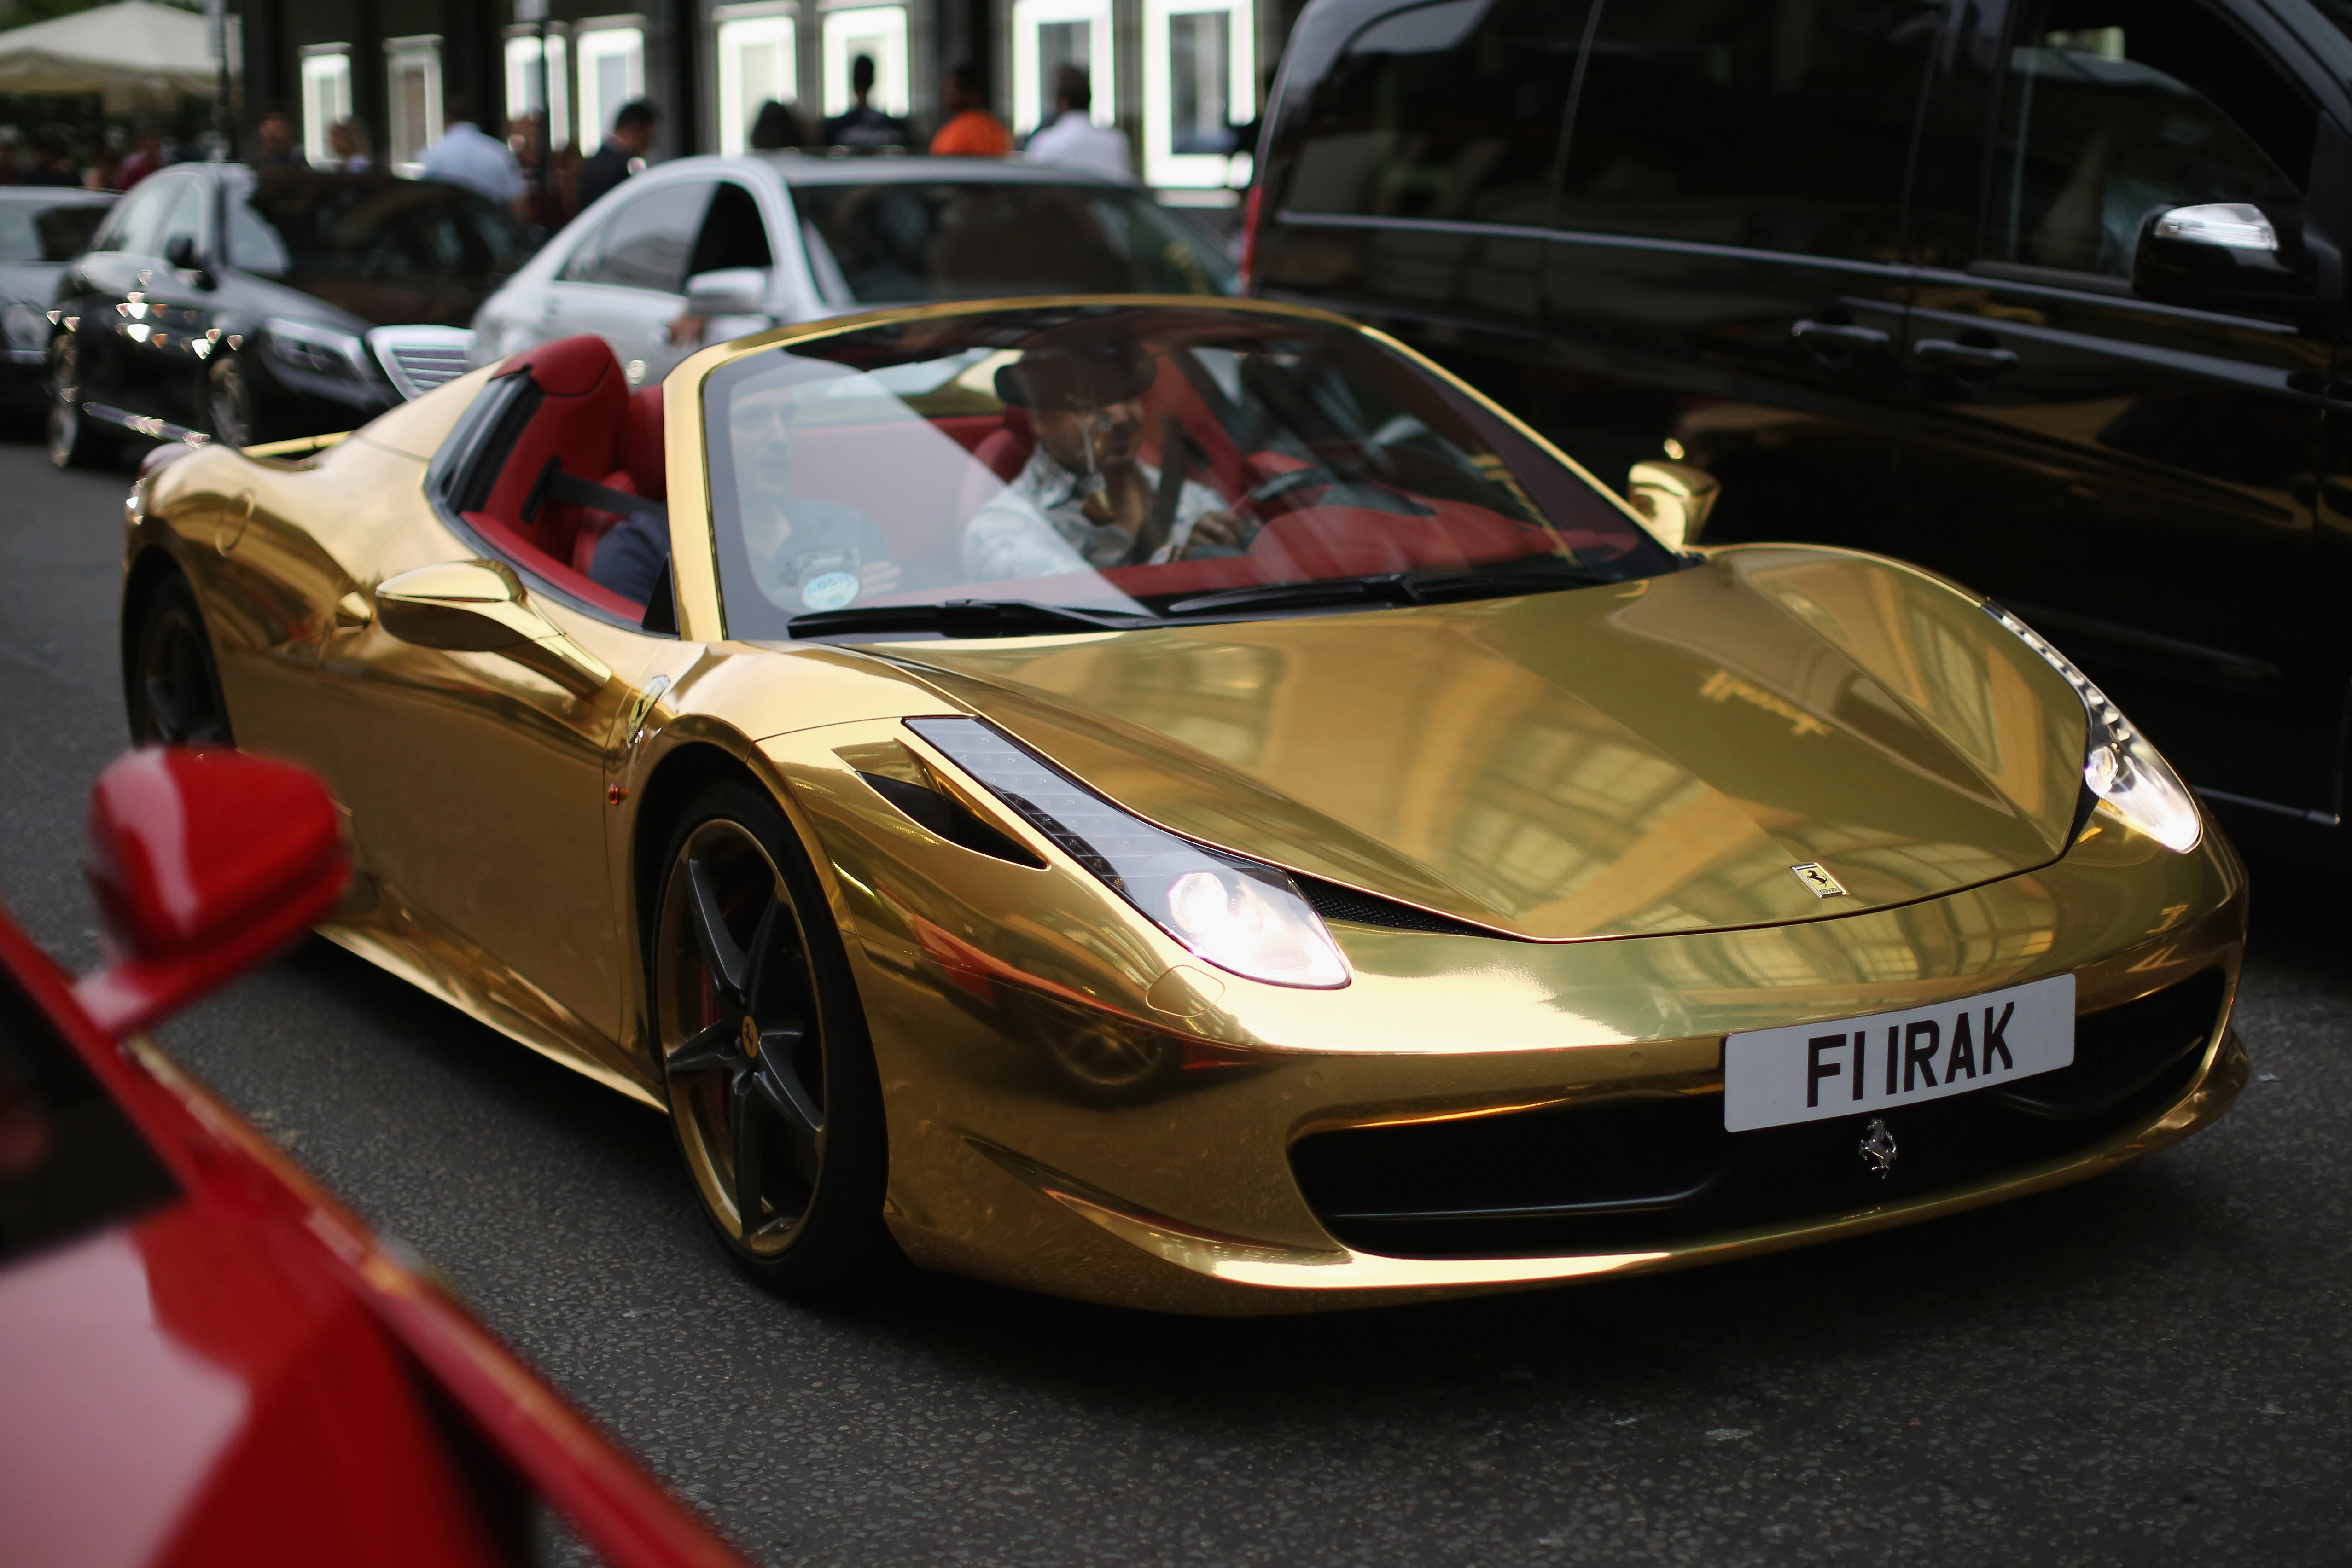 Gold машины. Золотая Феррари. Феррари 458 Голд. Принц Насер Золотая машина Феррари. Дорогие машины золотые.